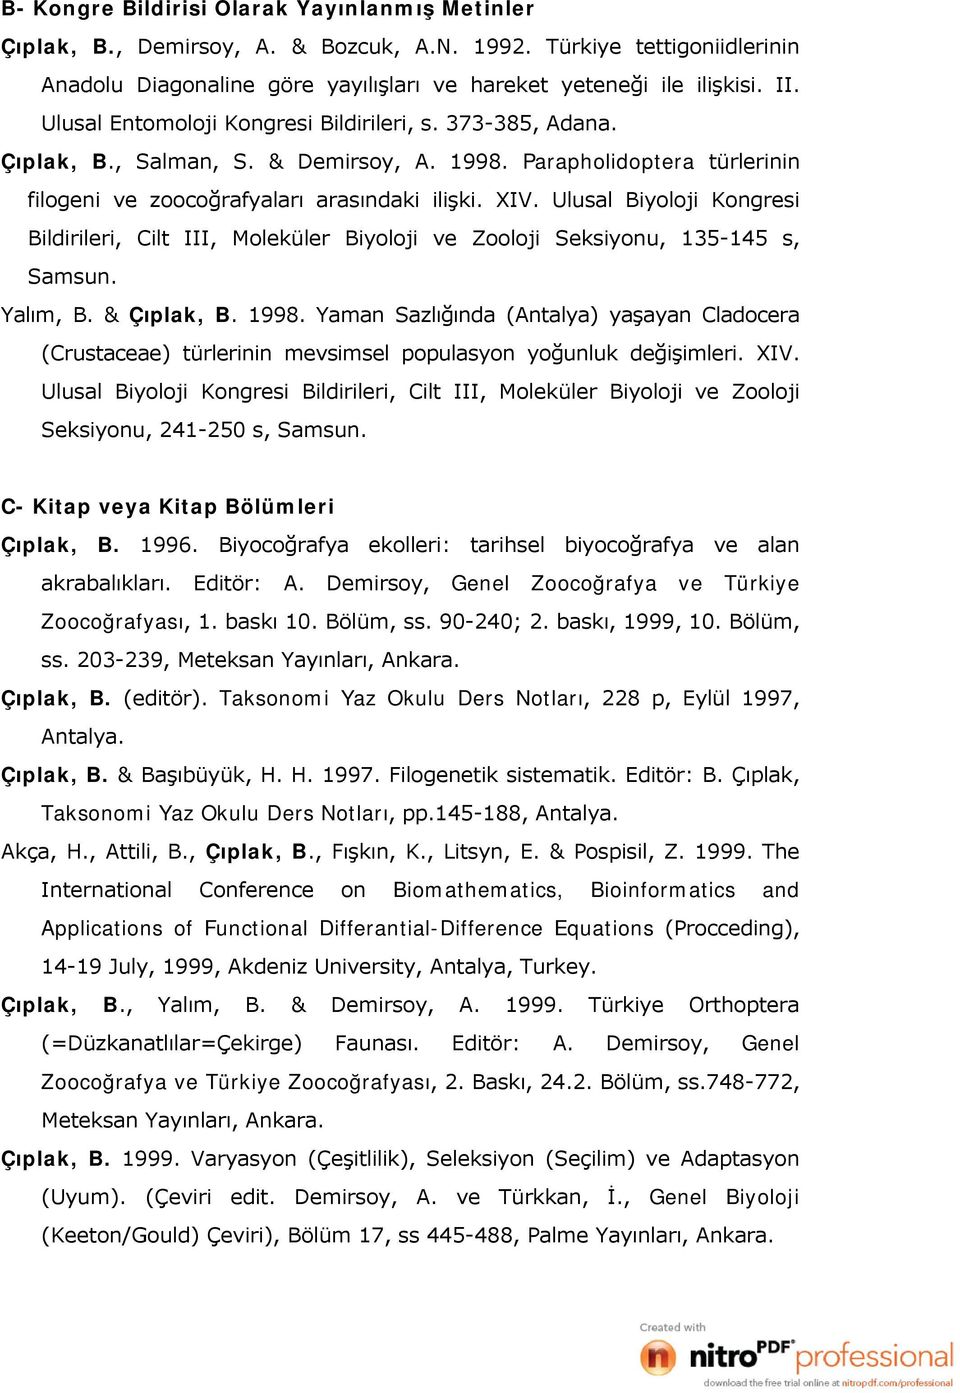 Ulusal Biyoloji Kongresi Bildirileri, Cilt III, Moleküler Biyoloji ve Zooloji Seksiyonu, 135-145 s, Samsun. Yalım, B. & Çıplak, B. 1998.